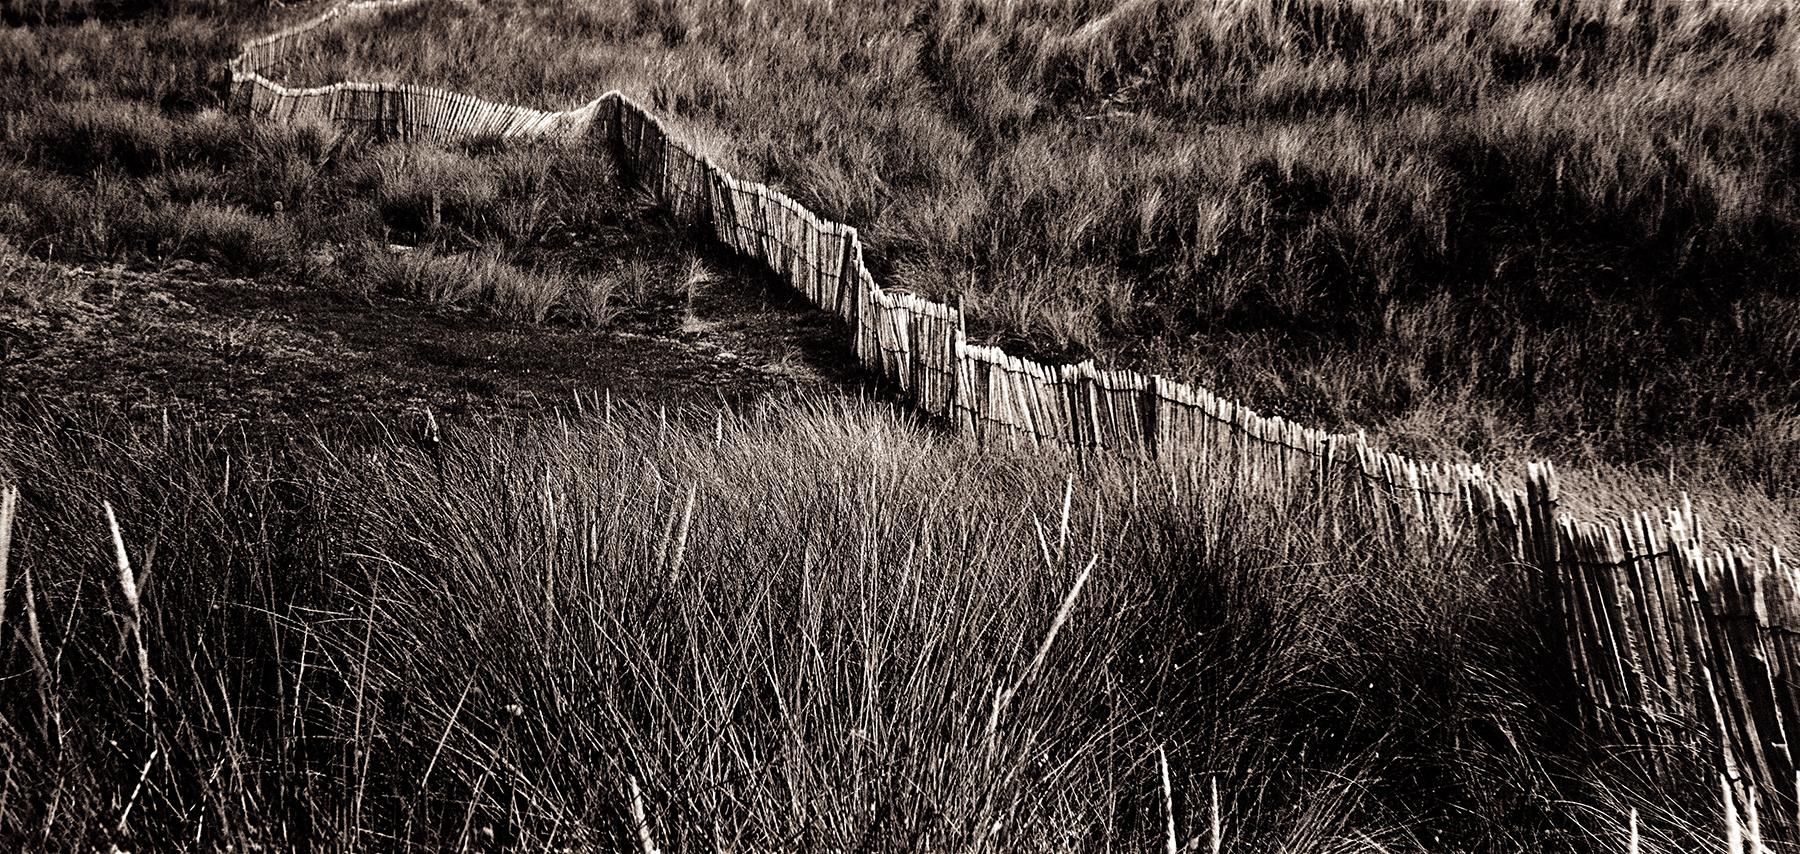 Dune - Signierter Kunstdruck in limitierter Auflage, schwarz weiß sepia, Landschaft braun (Schwarz), Landscape Photograph, von Ian Sanderson